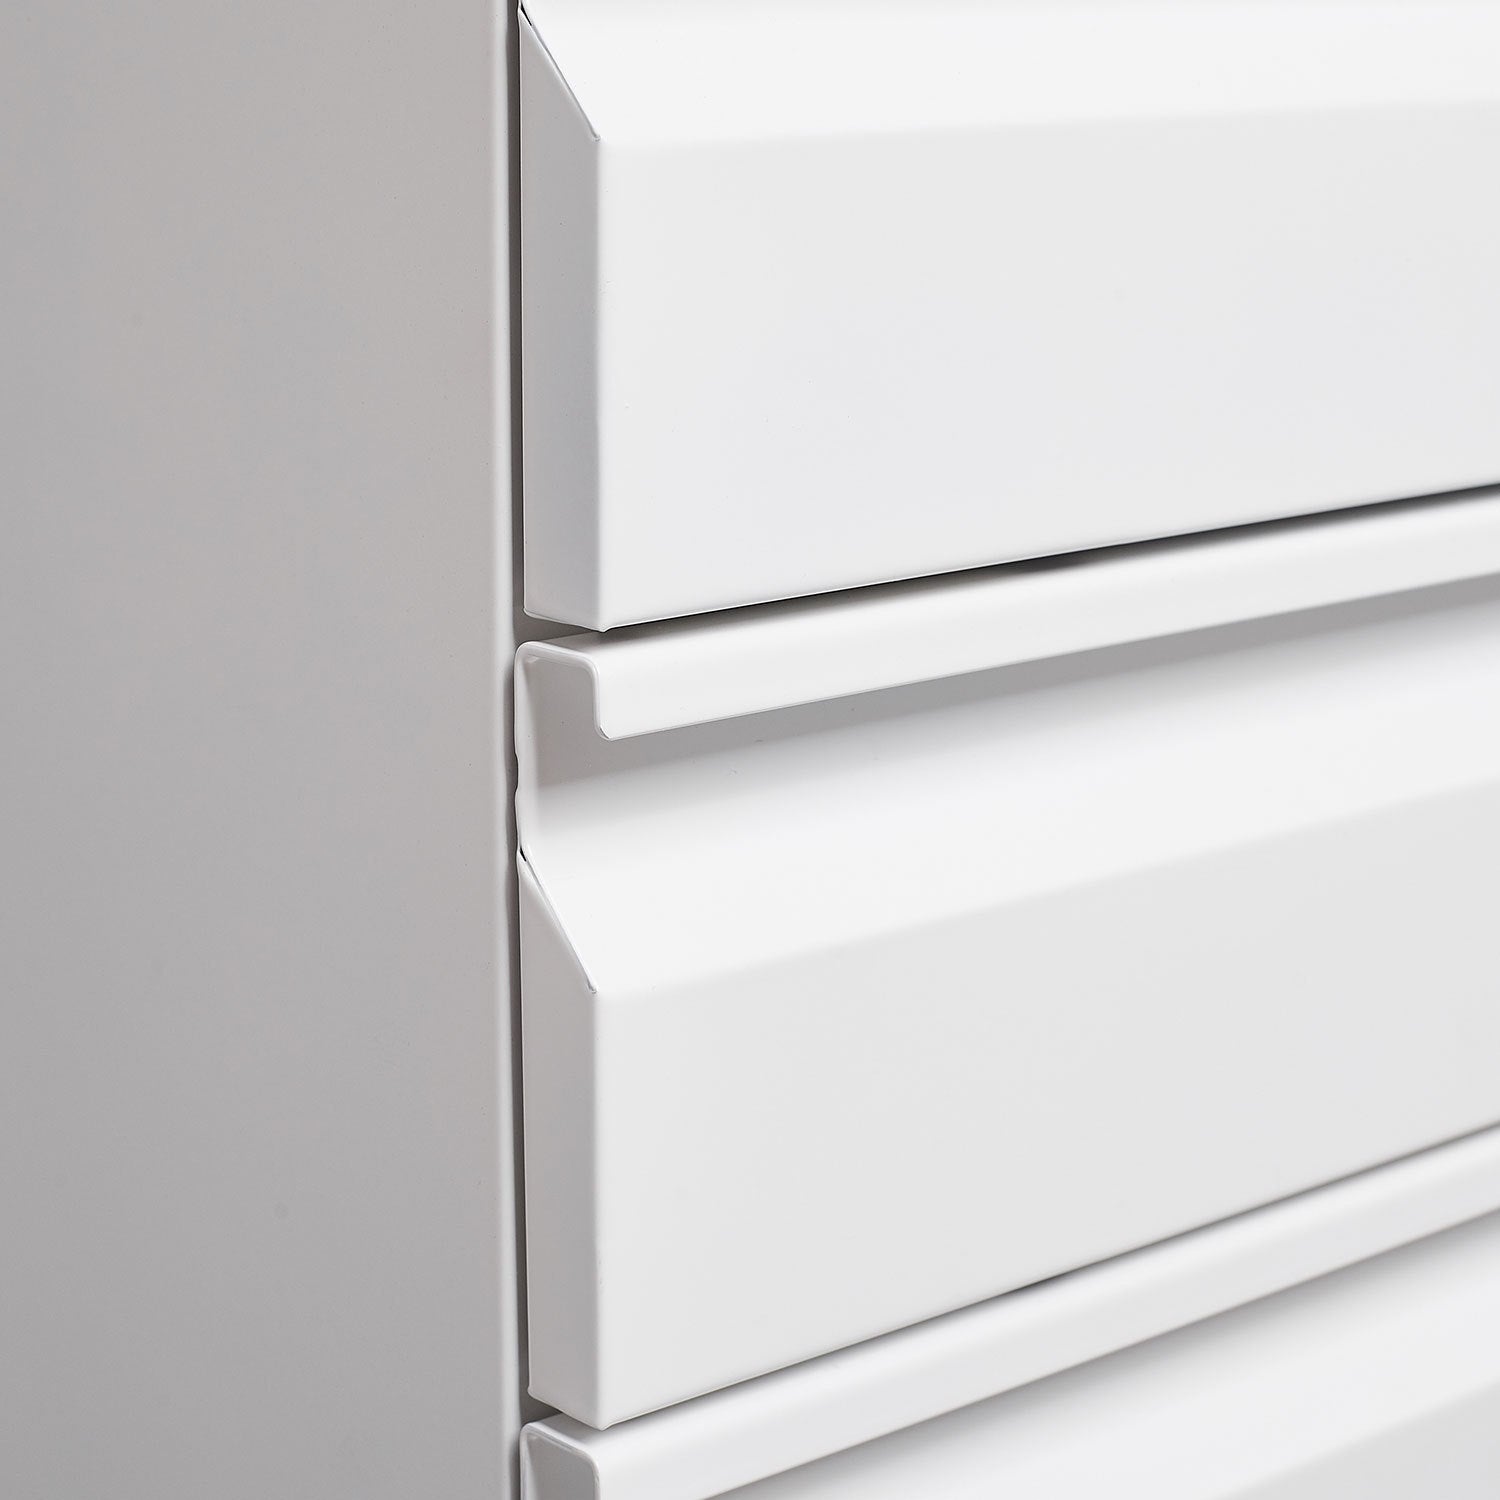 Mobile File Cabinet (White)